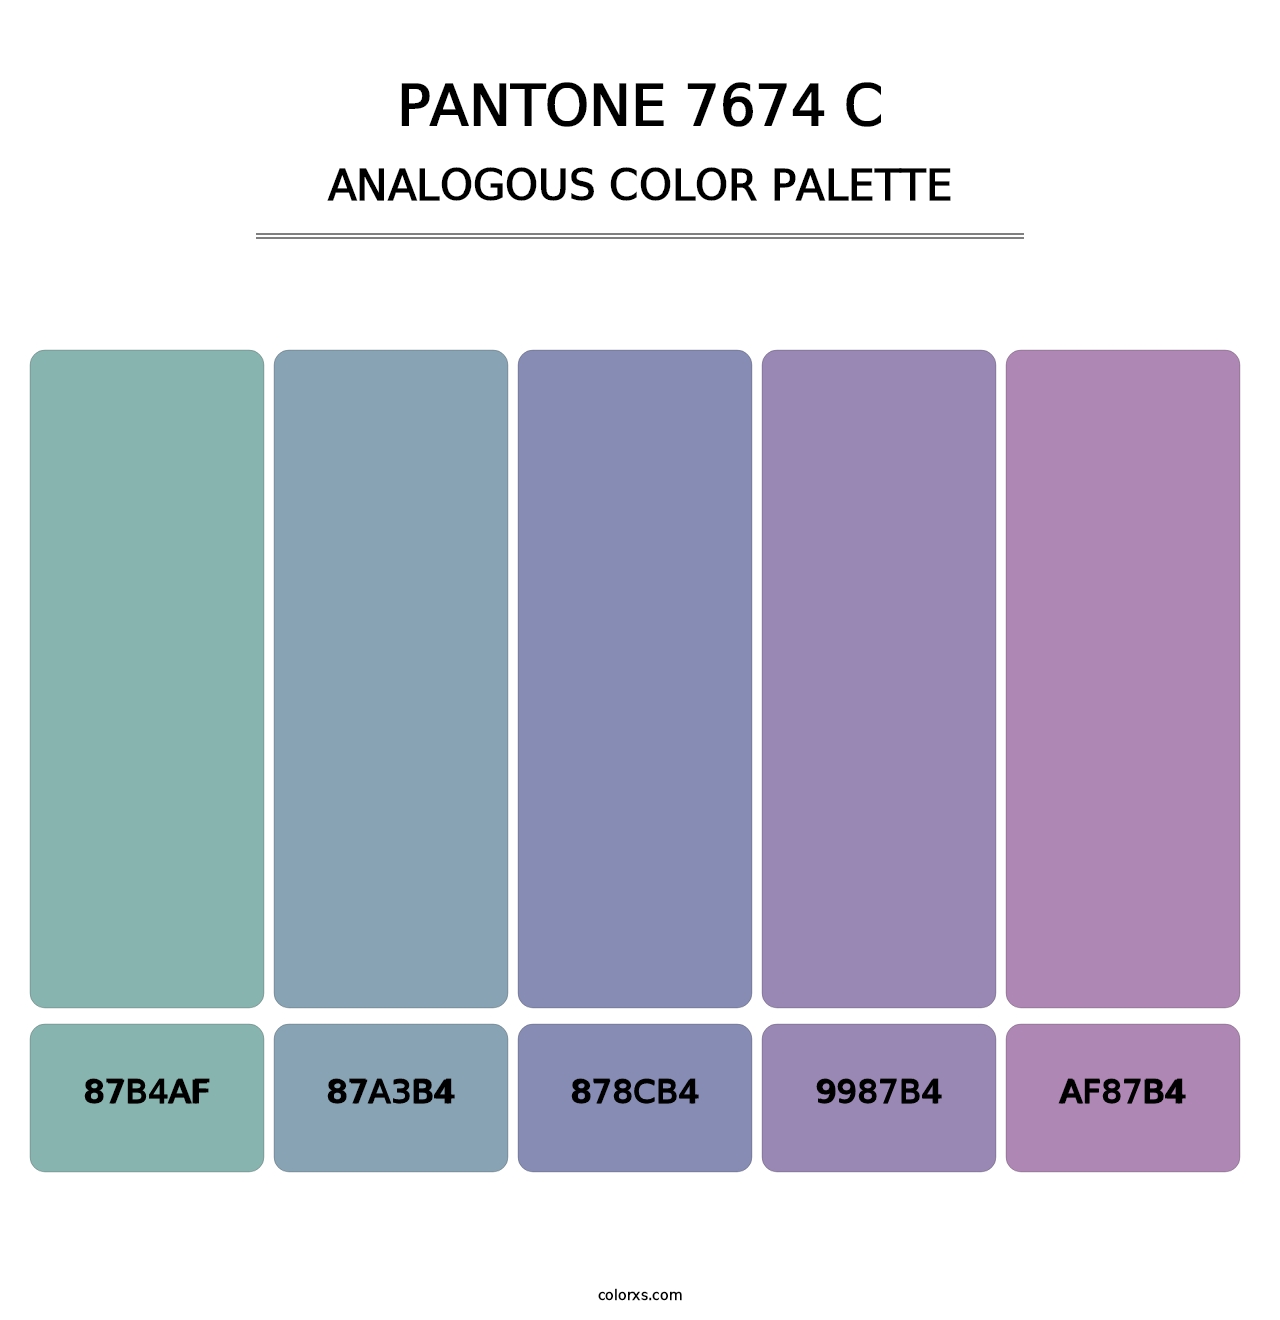 PANTONE 7674 C - Analogous Color Palette